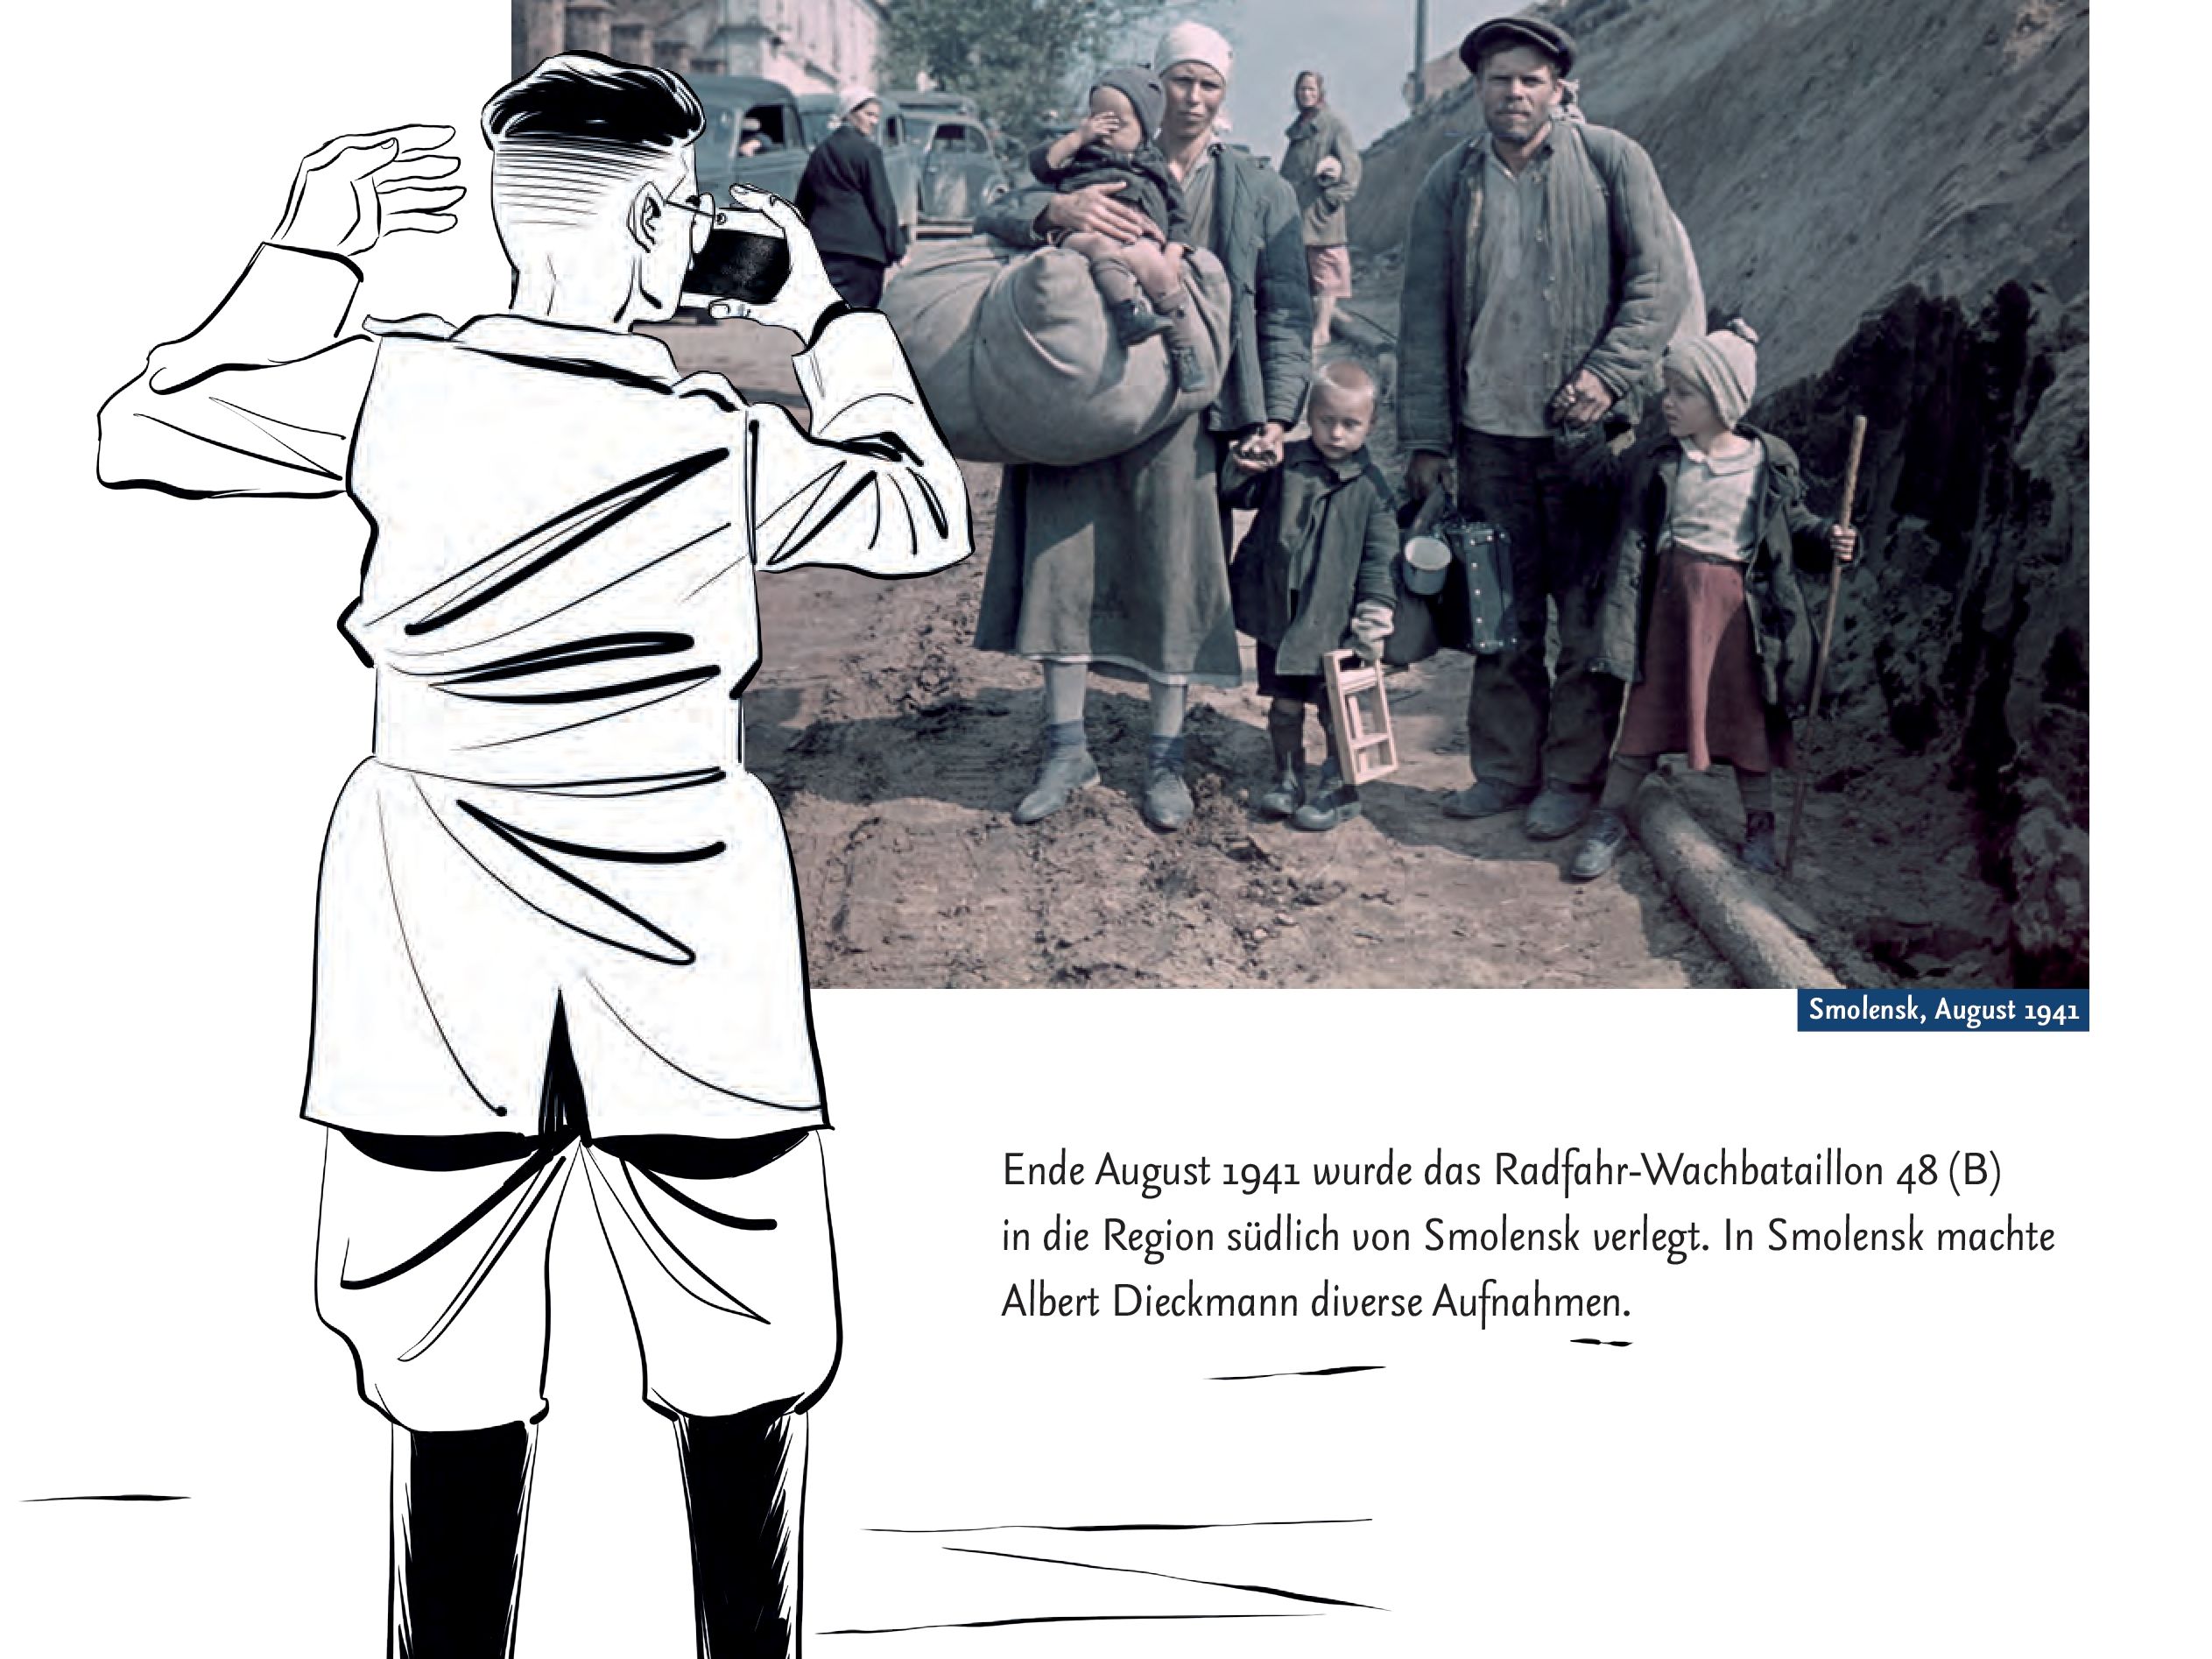 Ein Foto, das Menschen auf der Flucht zeigt, davor ein gezeichneter deutscher Soldat, der sie fotografiert.